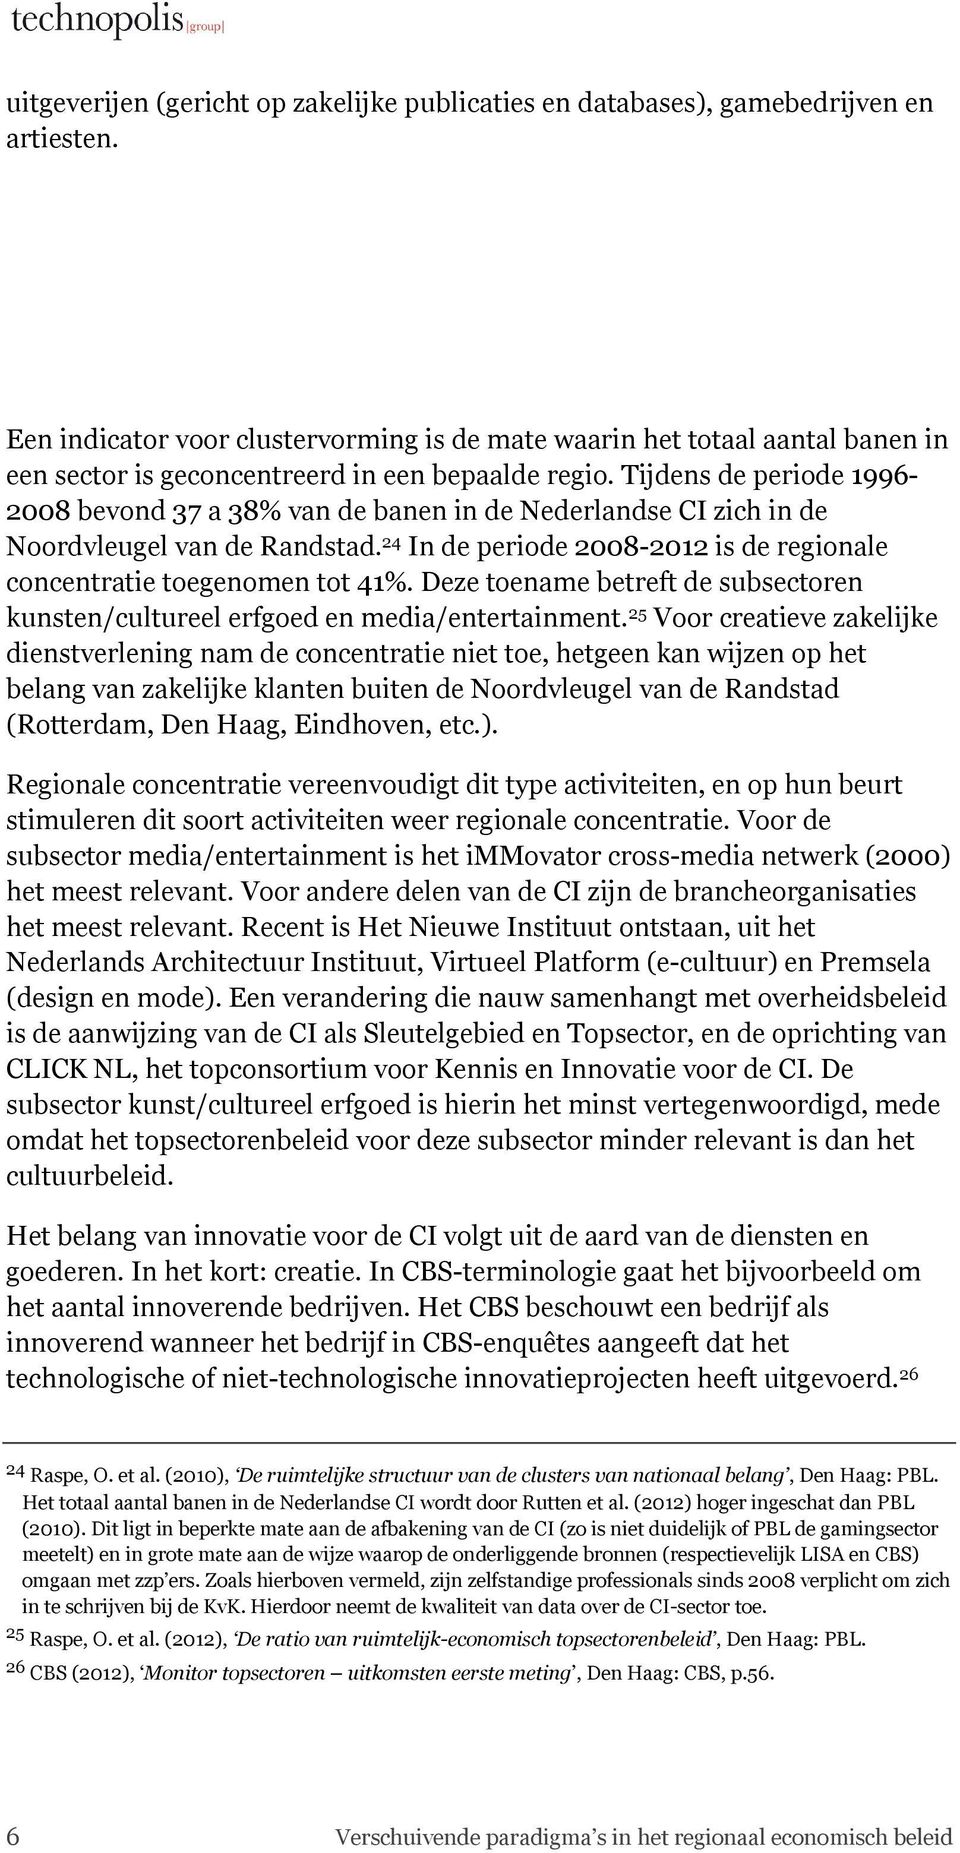 Tijdens de periode 1996-2008 bevond 37 a 38% van de banen in de Nederlandse CI zich in de Noordvleugel van de Randstad. 24 In de periode 2008-2012 is de regionale concentratie toegenomen tot 41%.